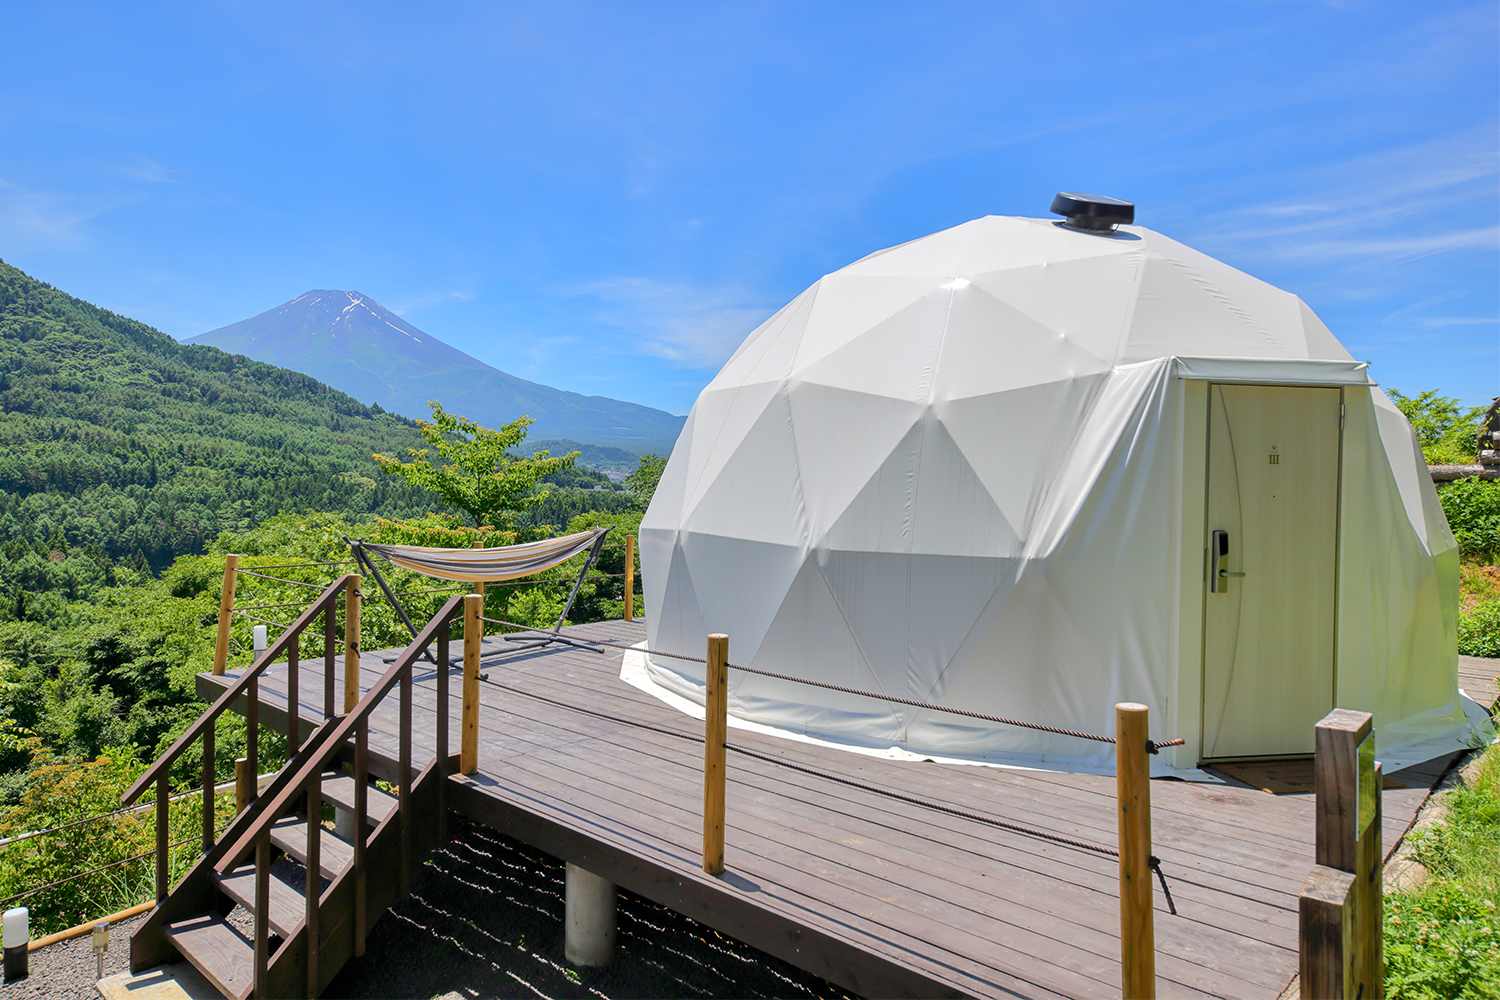 山梨県富士吉田市の「杓子山ゲートウェイキャンプ」に新ドームテントが増設